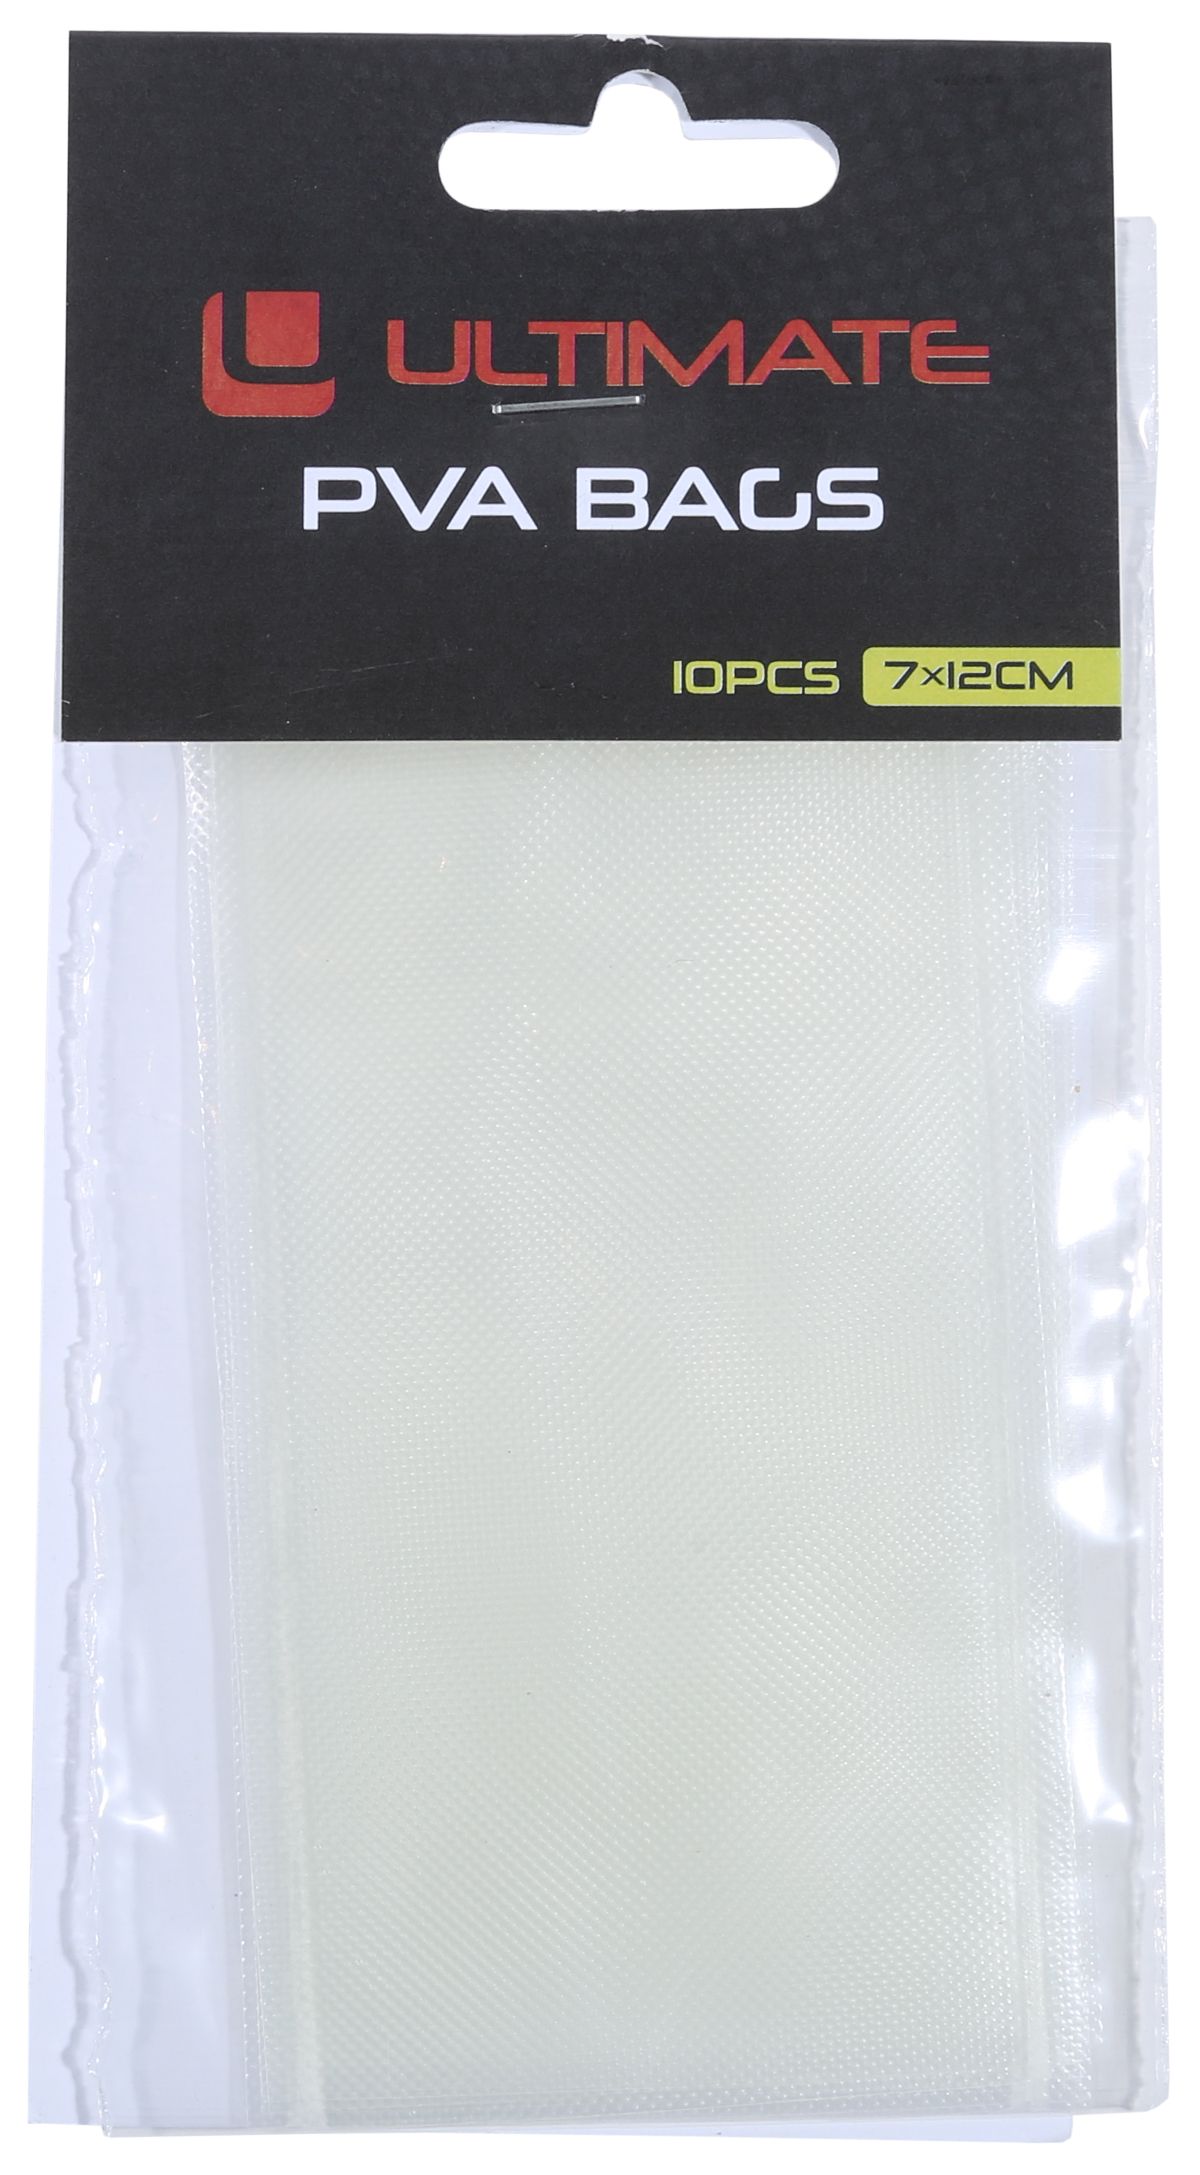 Ultimate PVA bags 10pcs